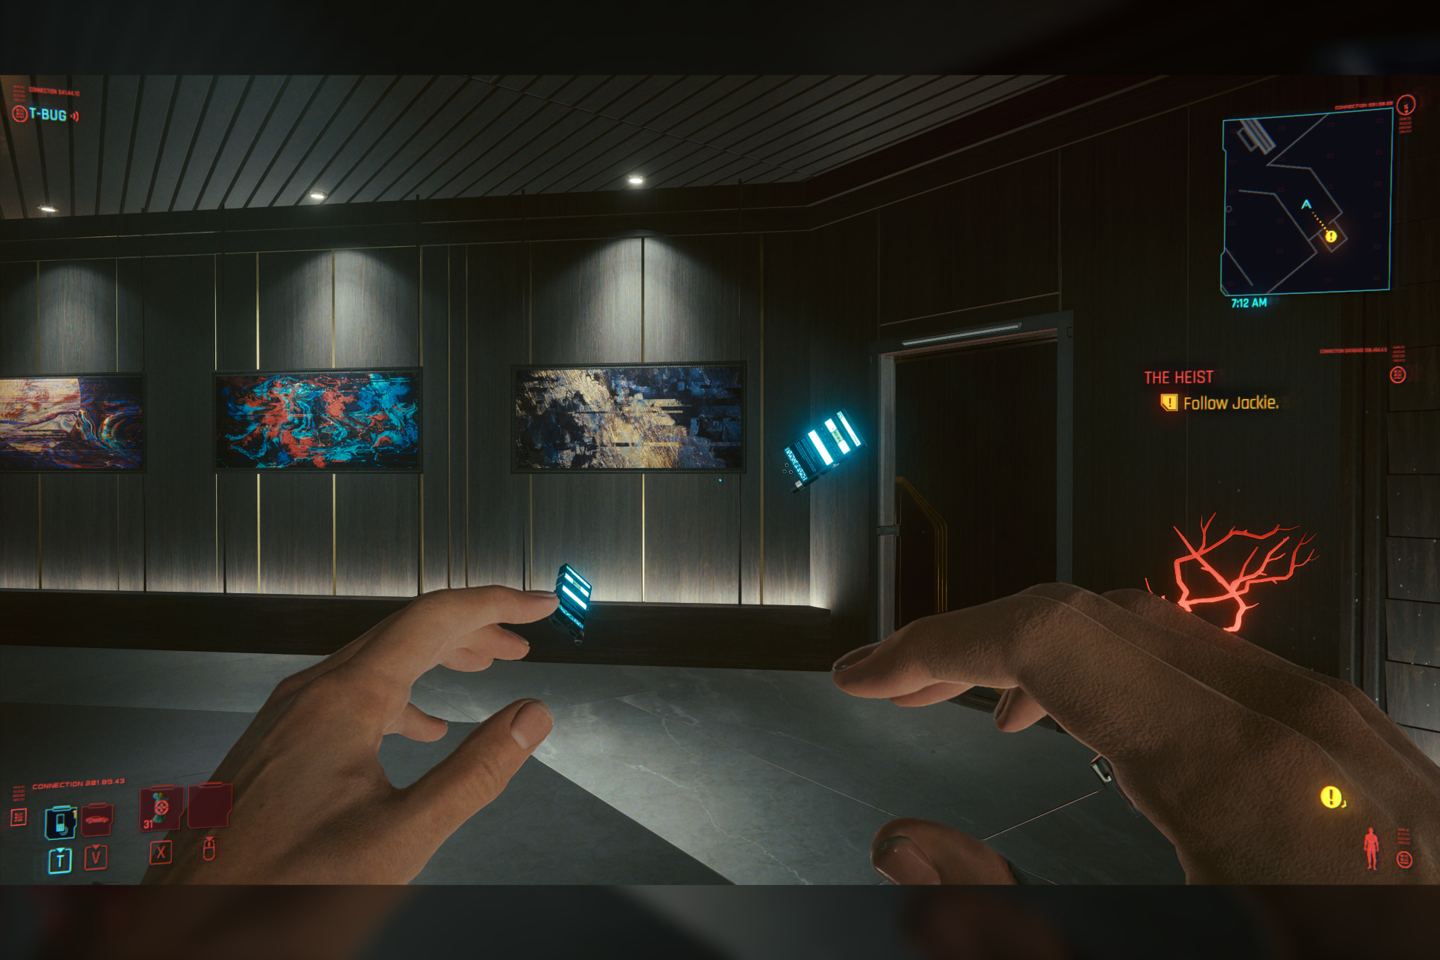  Vaizdai iš „Cyberpunk 2077“ pasaulio. Ekrano nuotraukos žaidžiant asmeniniu „Windows“ kompiuteriu.